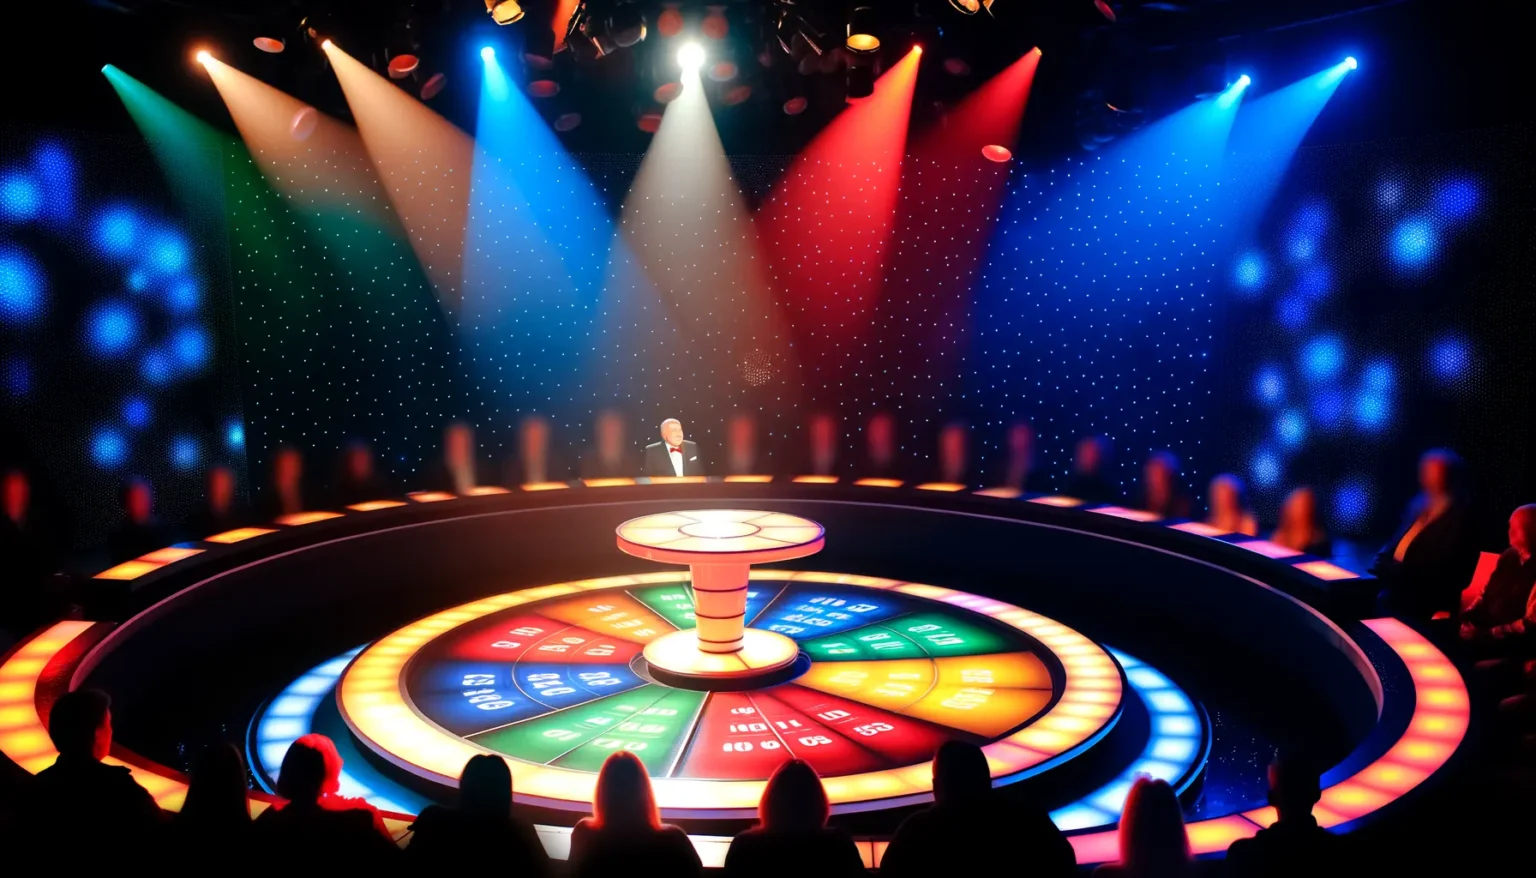 Eine lebendige Spielshow-Szene mit einem hervorgehobenen, mittig positionierten Moderator und einem farbenfrohen, radförmigen Podium im Zentrum einer beleuchteten Bühne. Strahlende Lichtkegel in verschiedenen Farben erhellen den Raum, während das Publikum im Vordergrund als Silhouetten erkennbar ist.